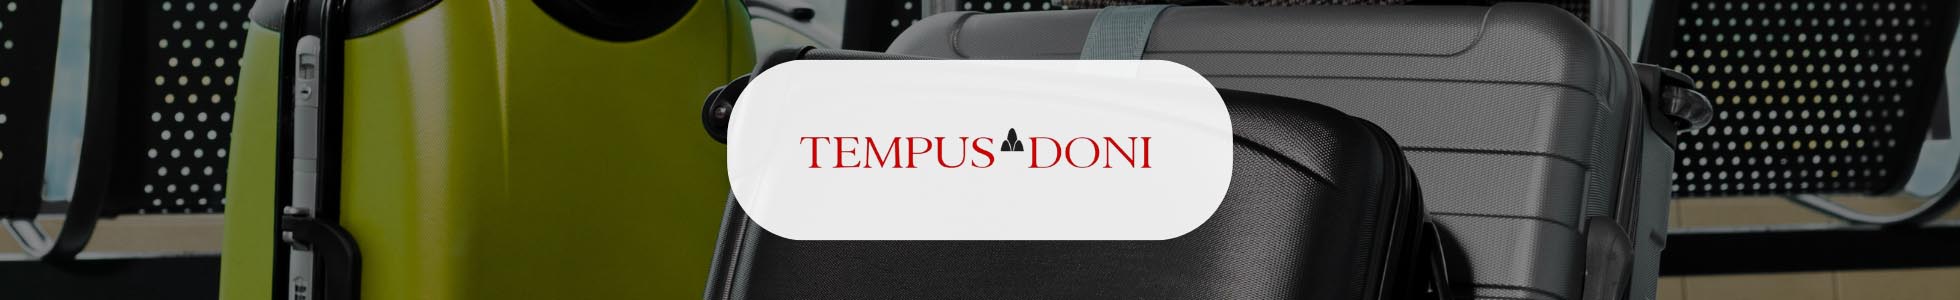 Tempus Doni  - shop online scarpe, borse, abbigliamento